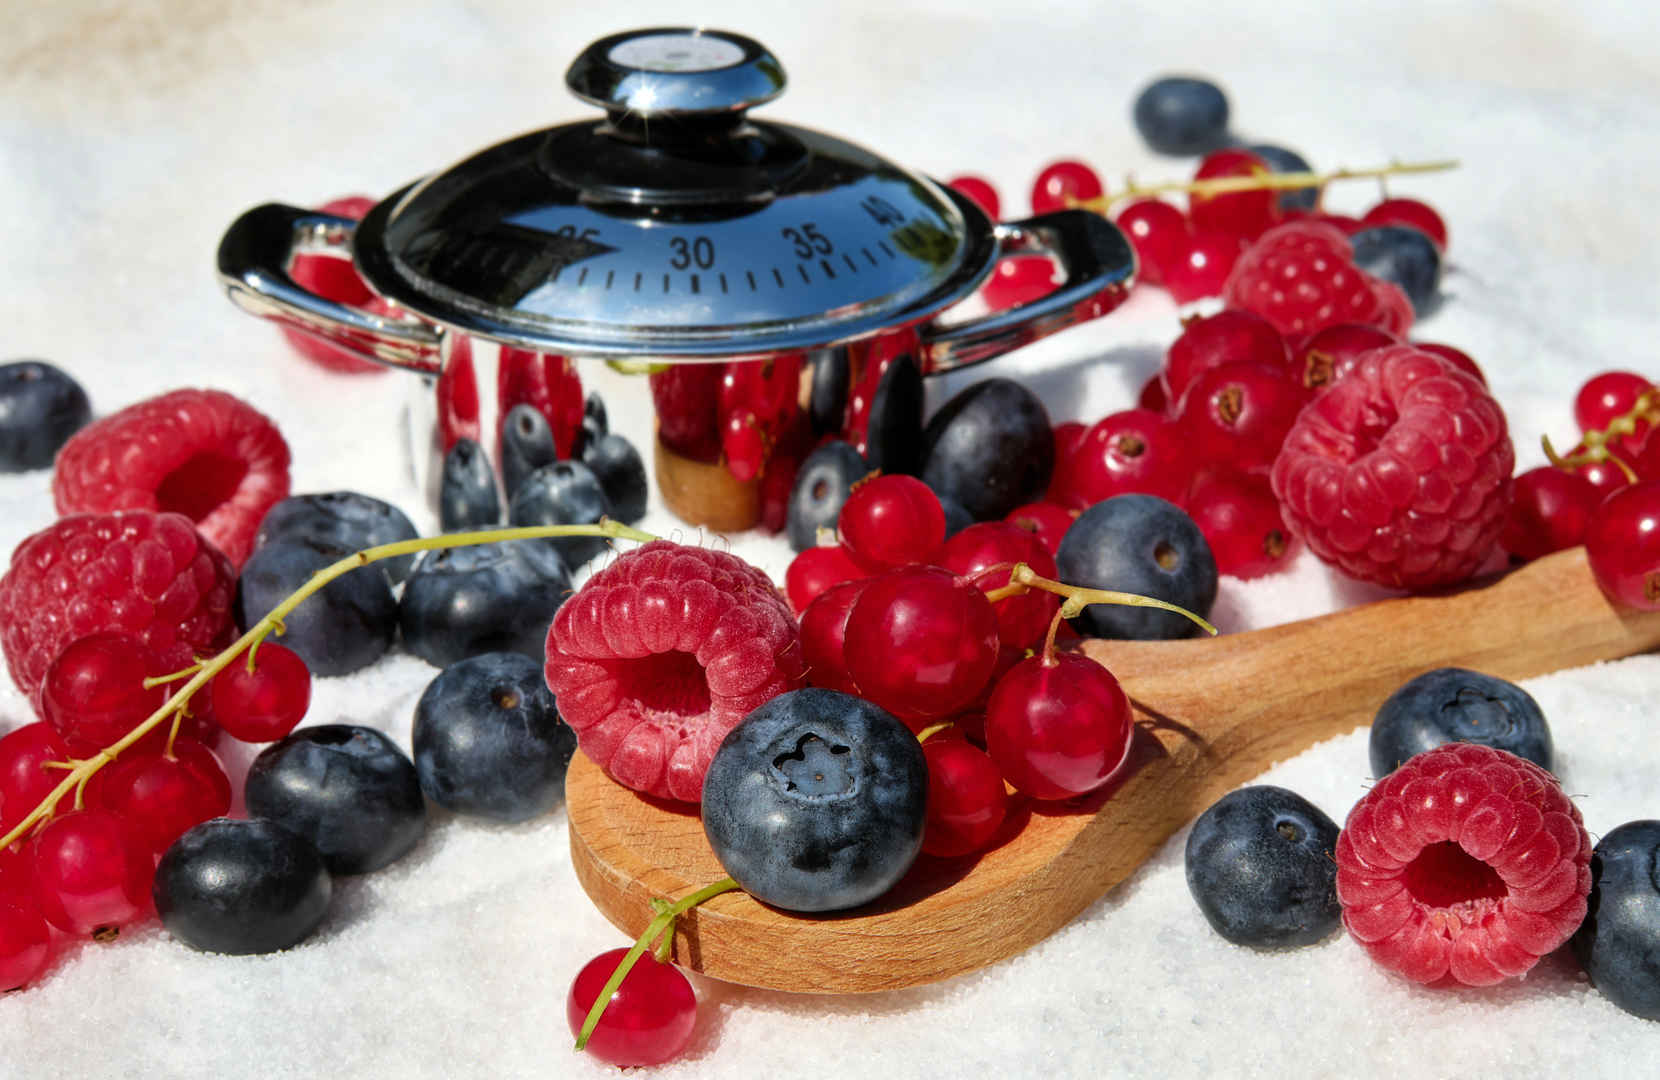 浆果 混合 山莓 蓝莓 葡萄干 水果 甜 健康 维生素 食品 弗里施 糖 锅 4K图片